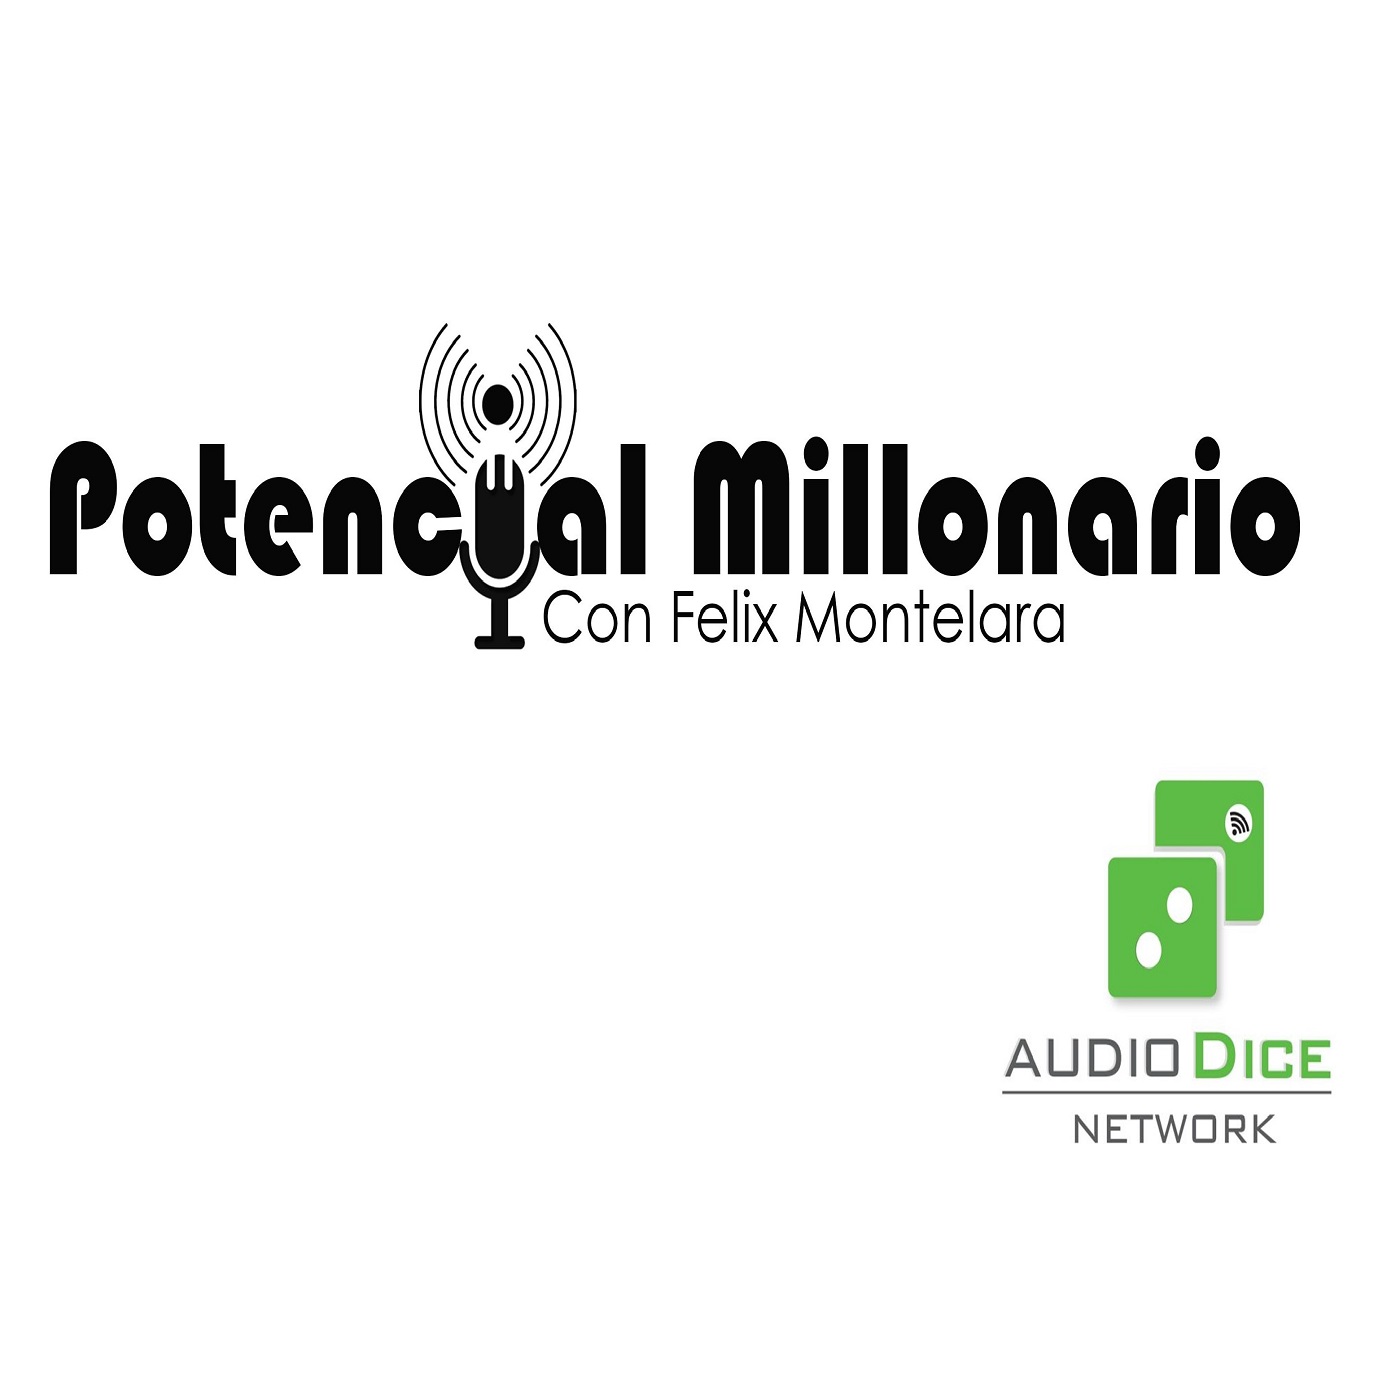 ¿Eres Genial o Inútil? ¡Como Ser Genial! | Ep. 219 Potencial Millonario por Felix A. Montelara en Audio Dice Network Español (Spanish)